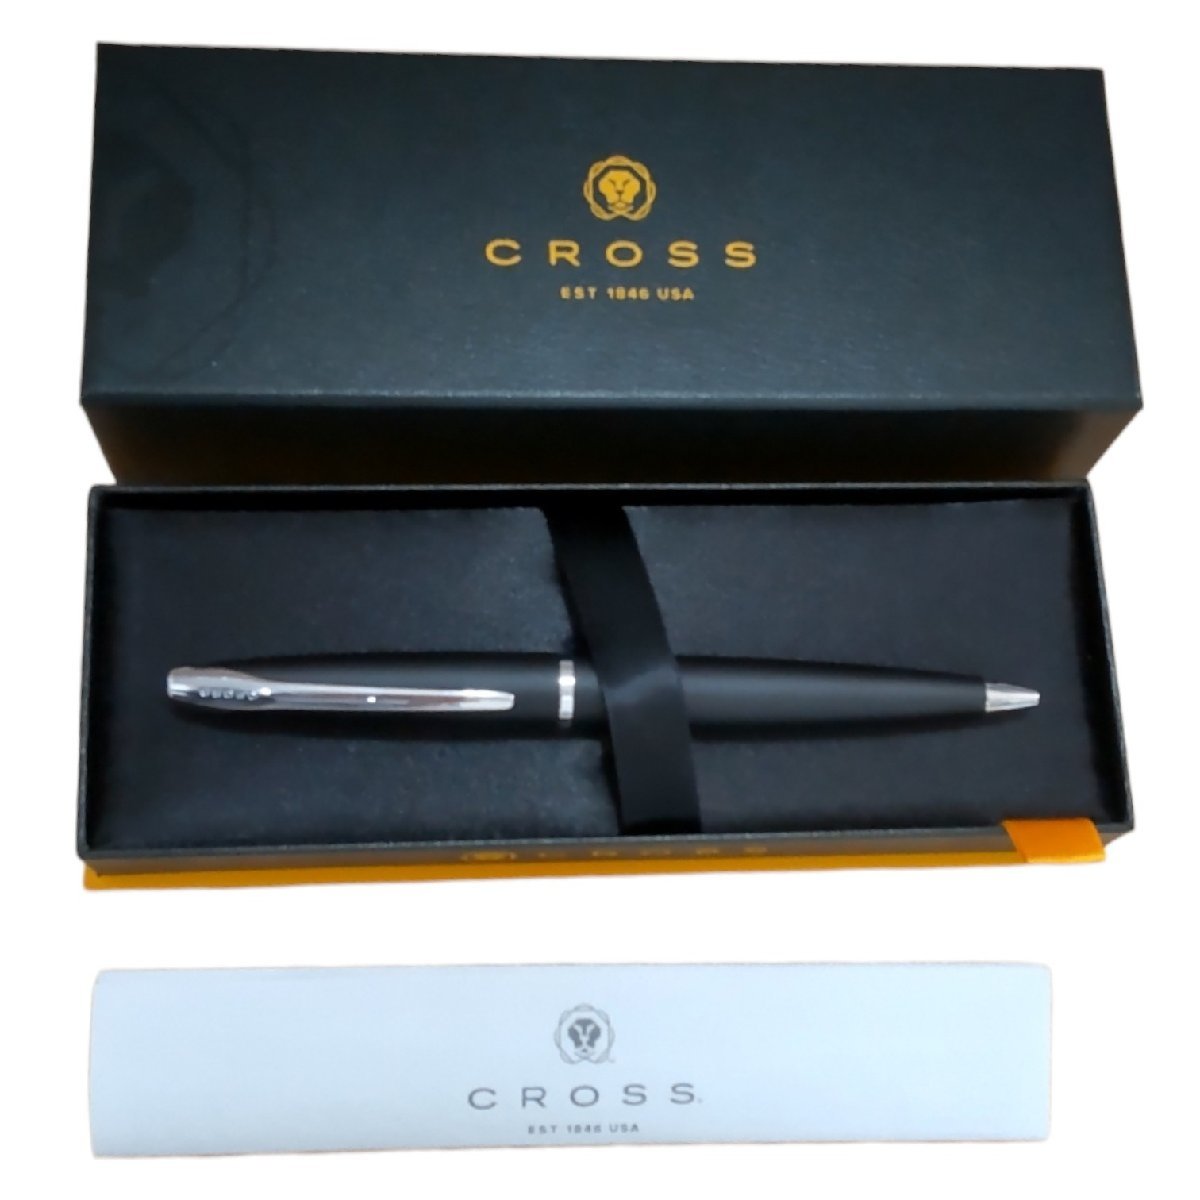 【未使用】クロス CROSS EST 1846 USA ボールペン ツイスト 筆記具 筆記用具 箱有 J44125RK_画像1